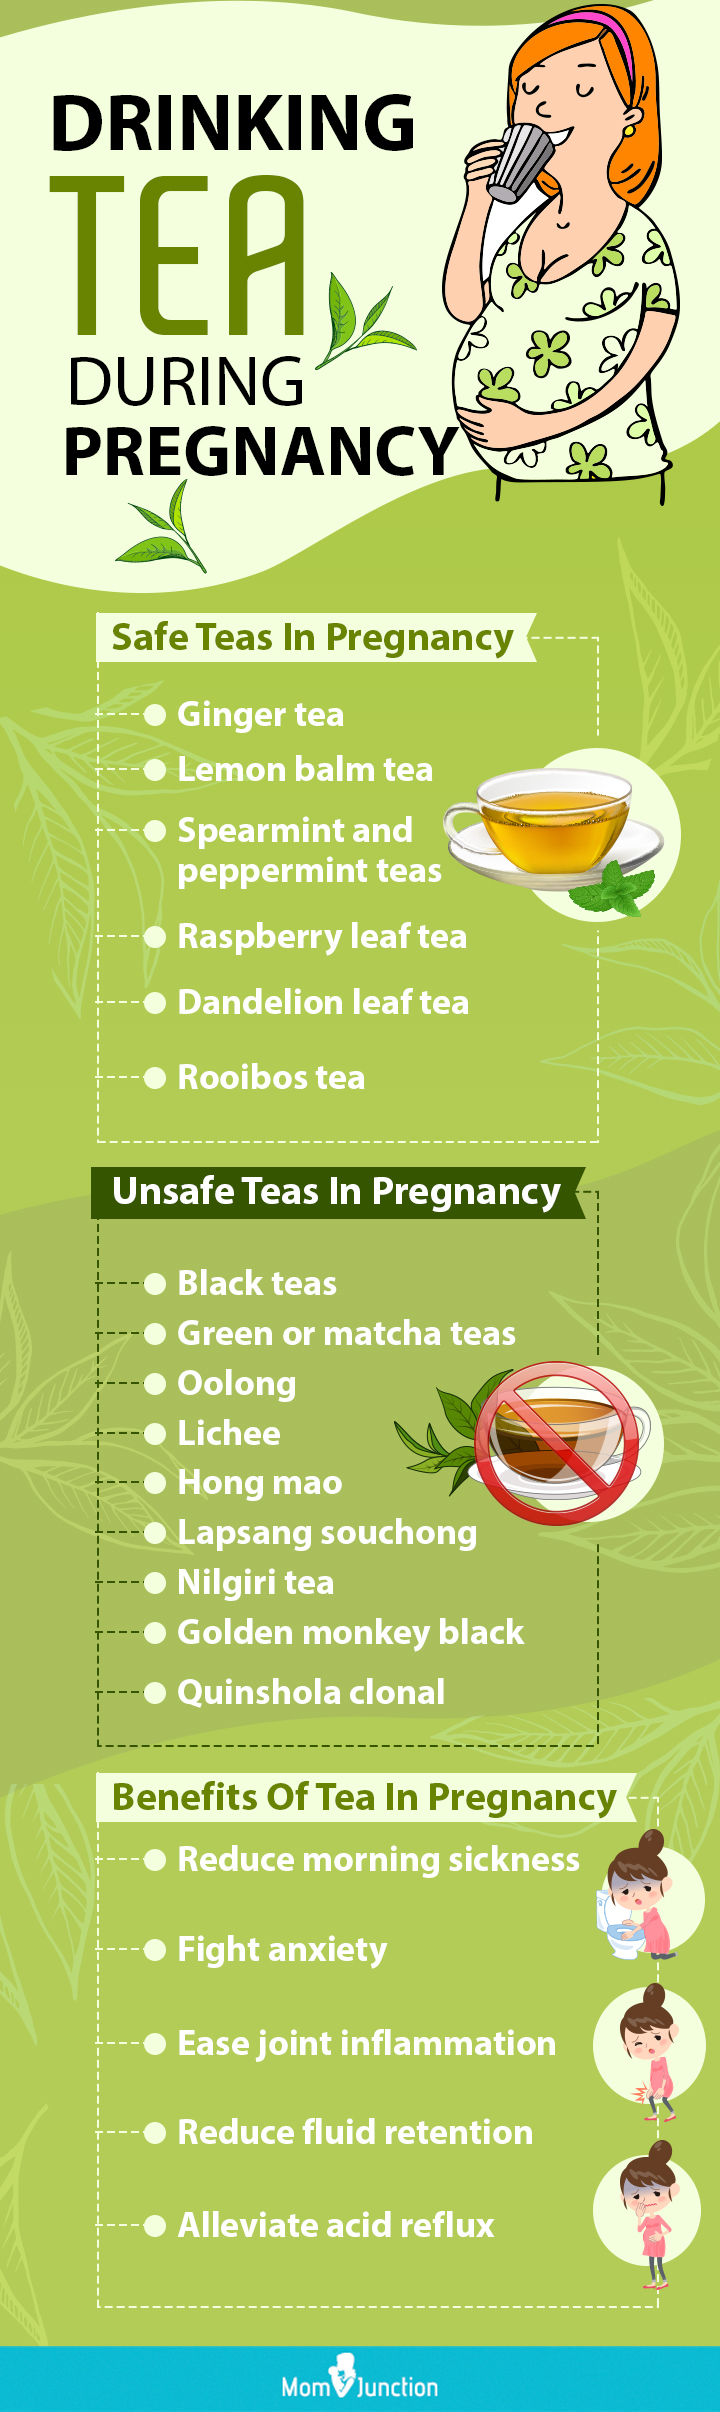 怀孕期间不安全的茶(信息图)